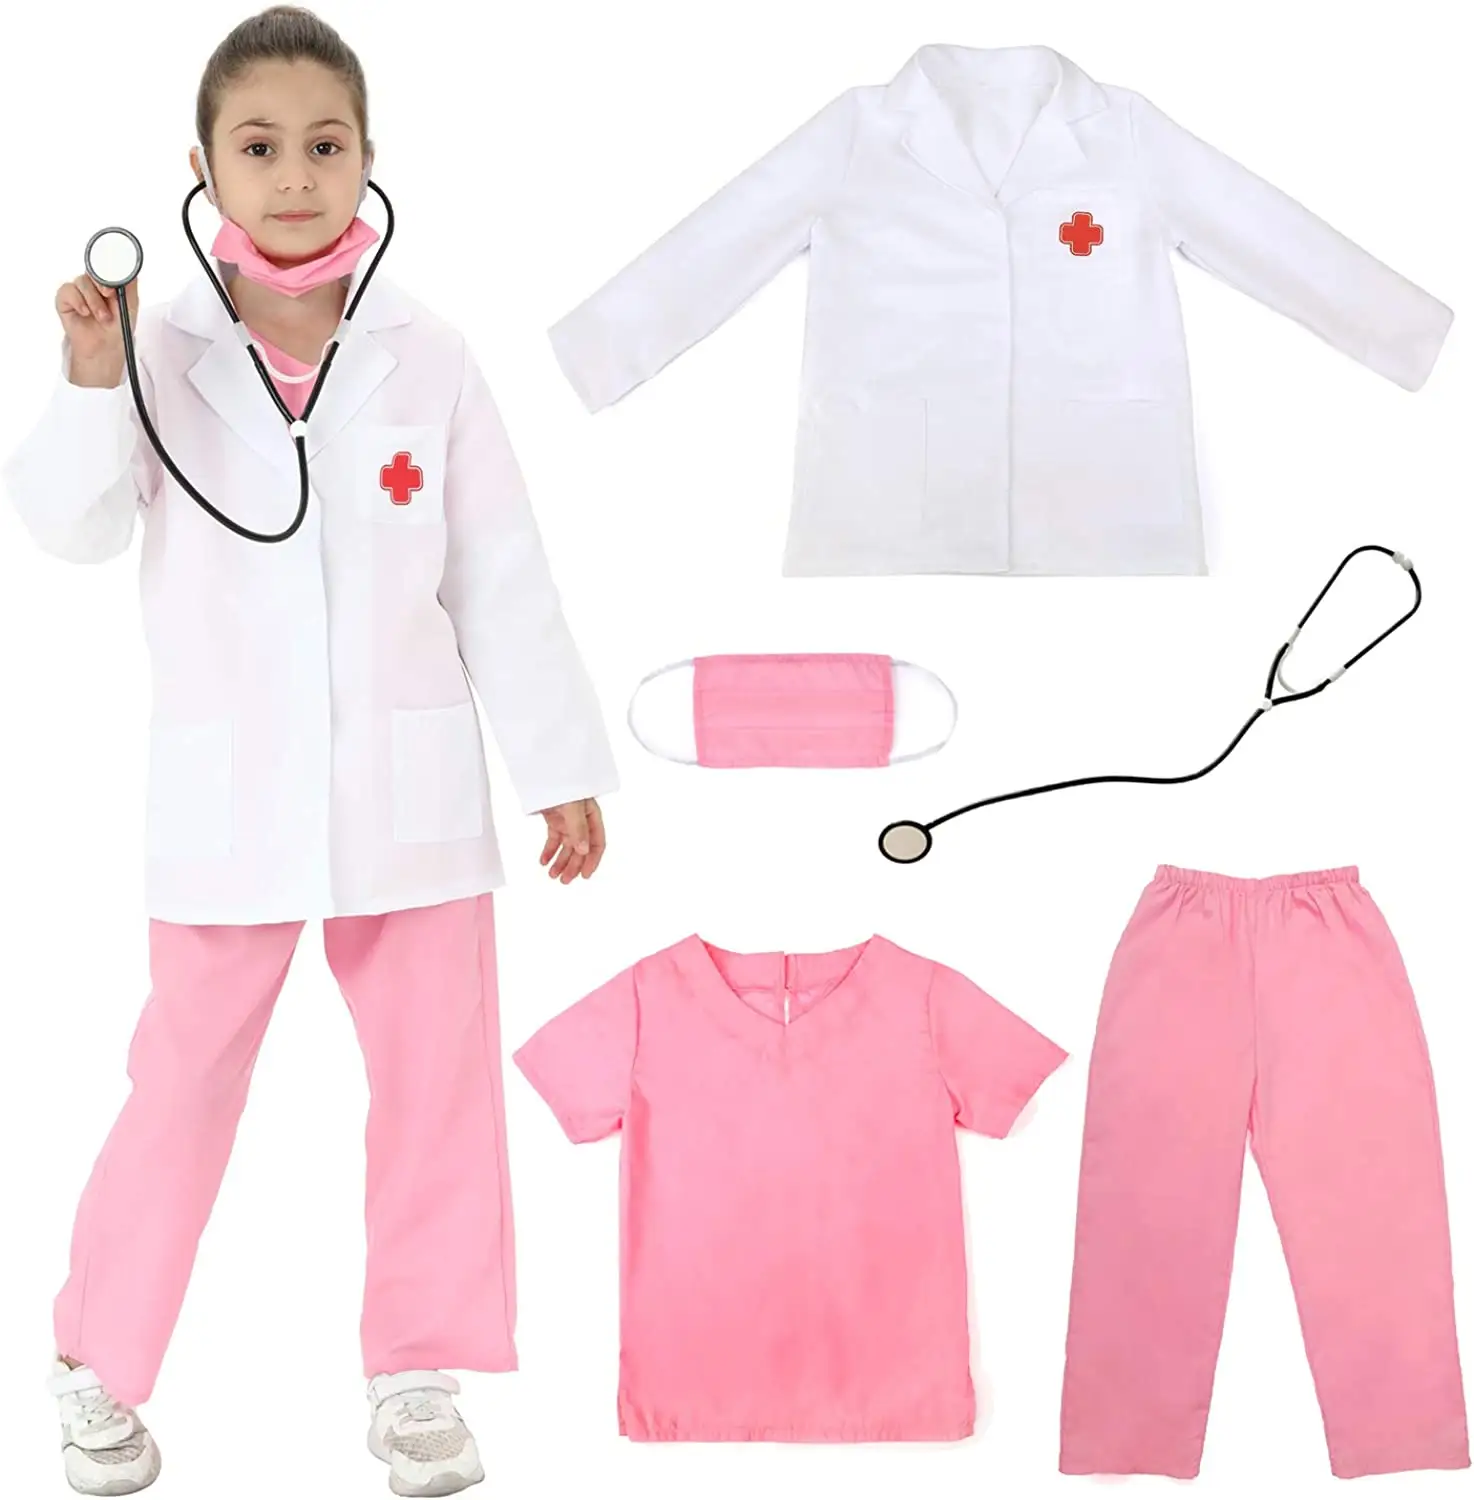 Neue Designs Kinder Labor kittel Weißer Arzt mantel Echter Kinder labor kittel für Schulprojekte Halloween-Kostüme